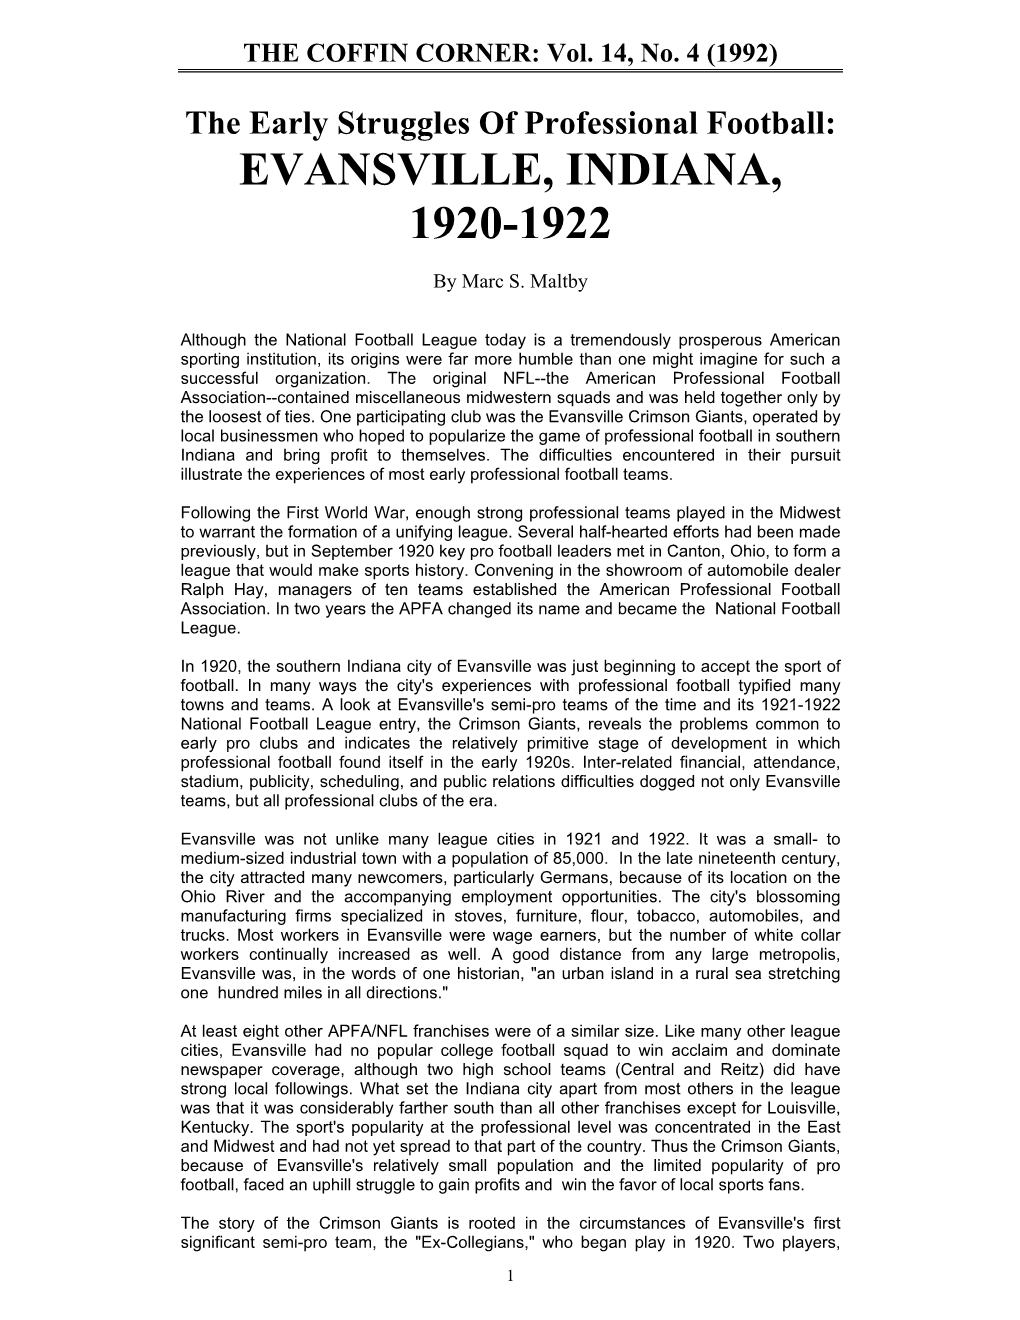 Evansville, Indiana, 1920-1922